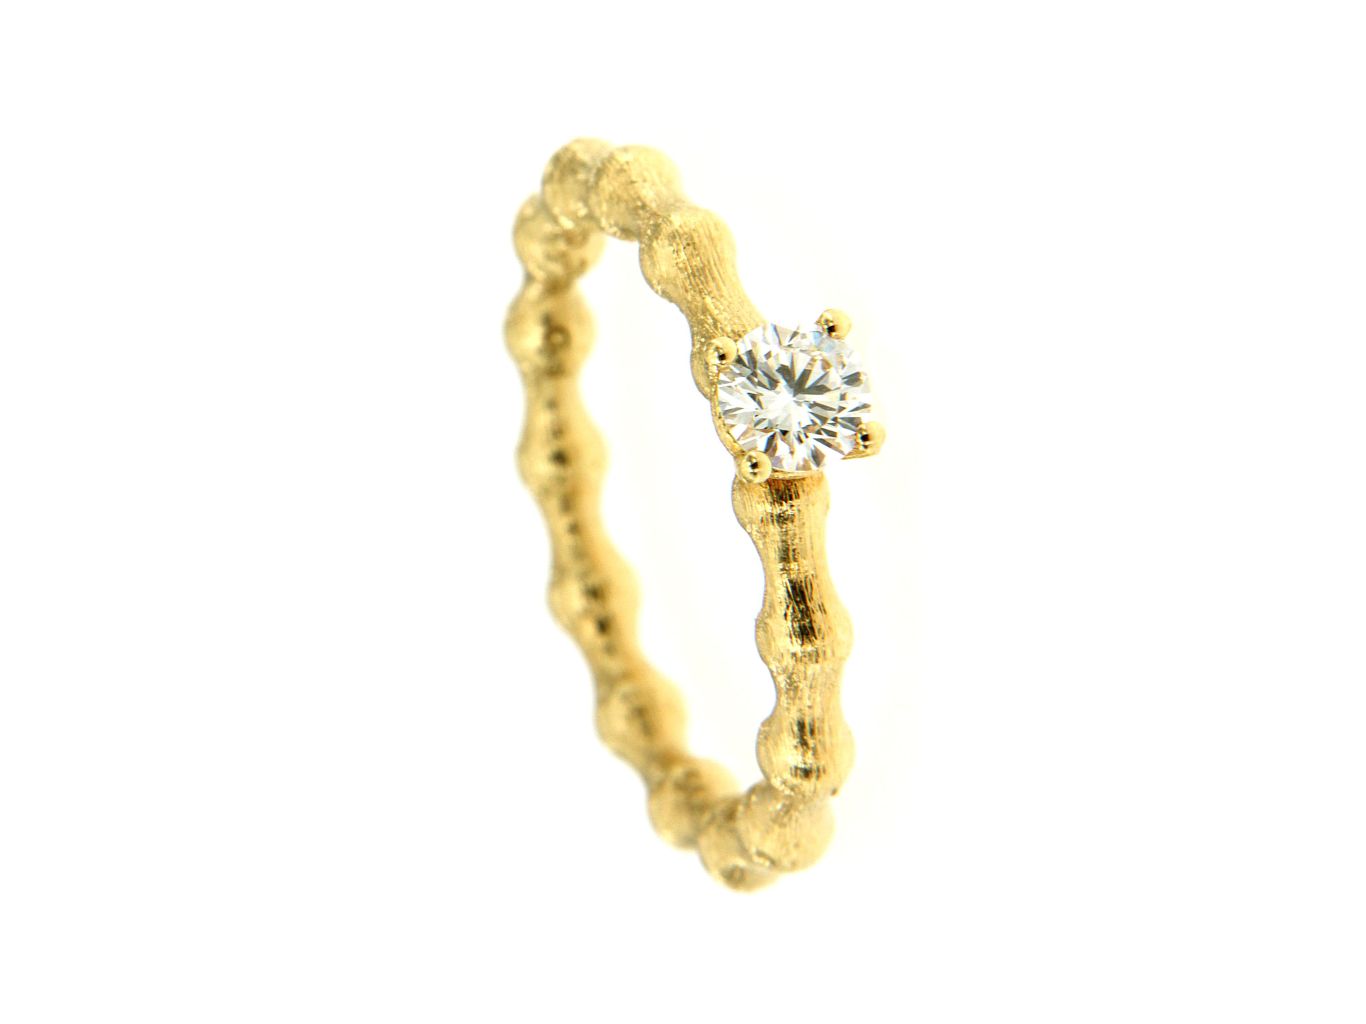 Anello oro giallo 750 con diamante 0.30 carati, Colore G, purezza SI